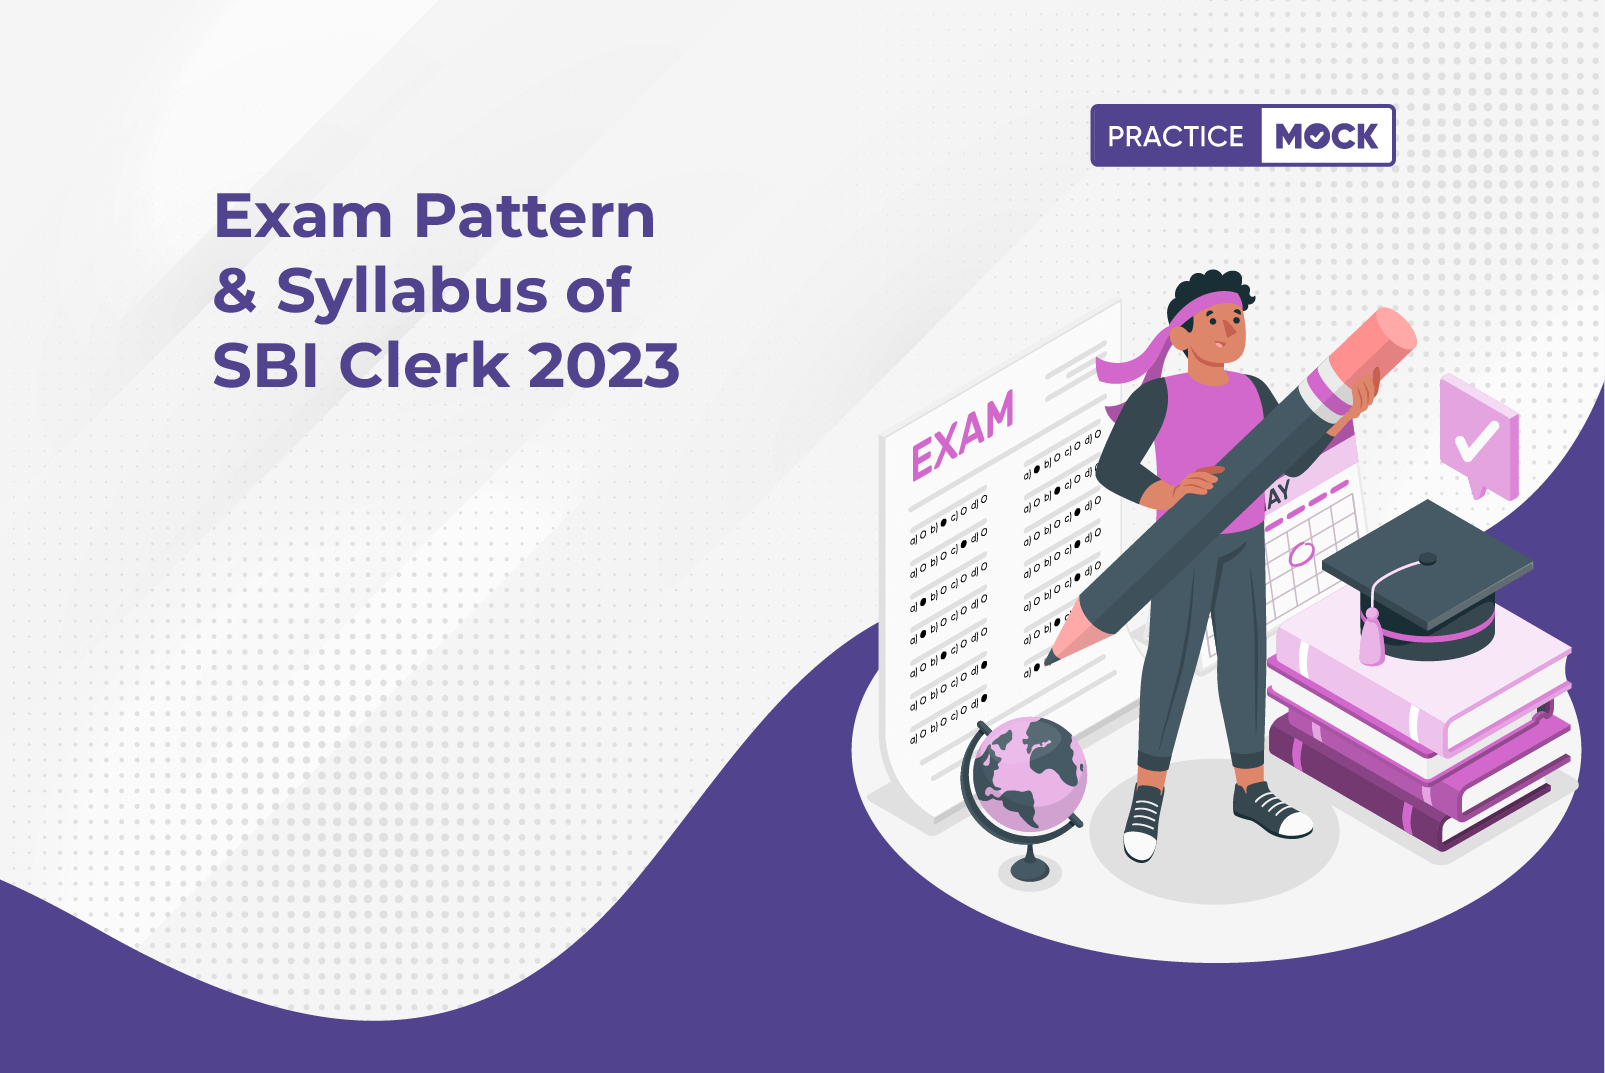 Exam Pattern & Syllabus of SBI Clerk 2023